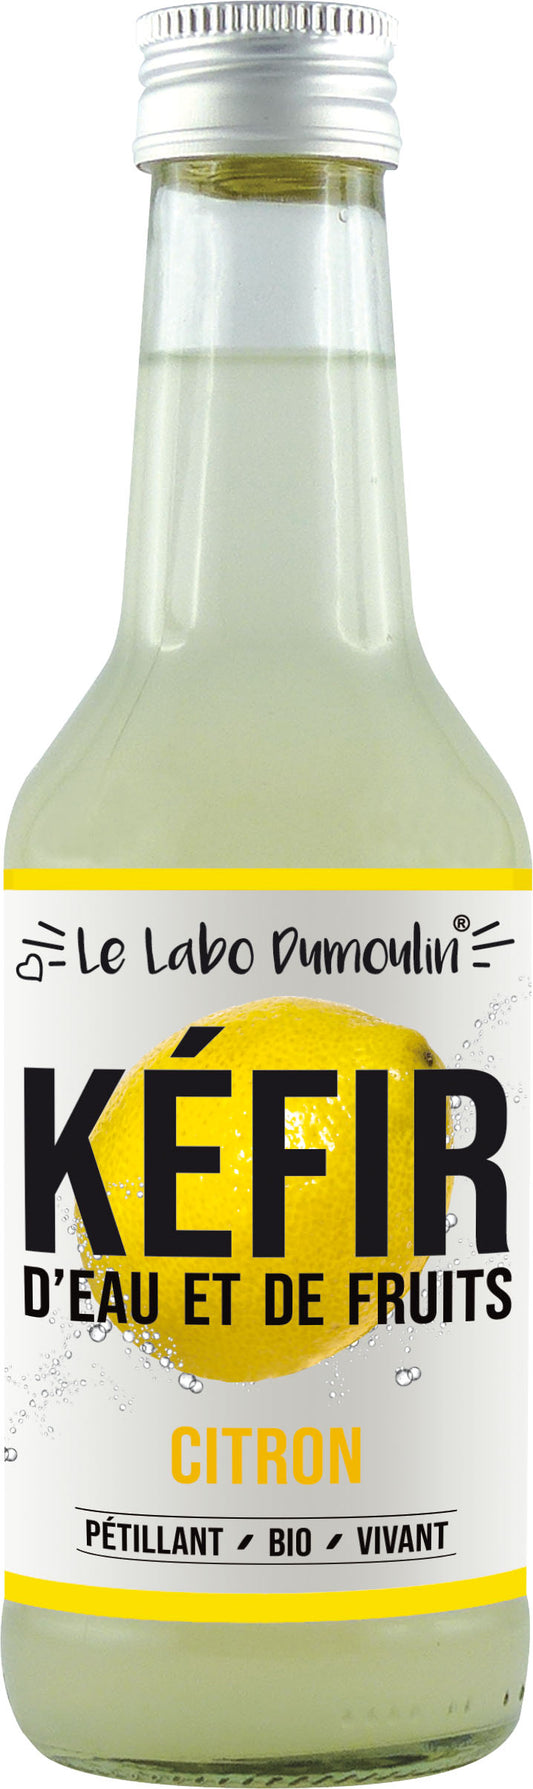 Le Labo Dumoulin -- Kéfir frais bio (citron) - 25 cl x 8